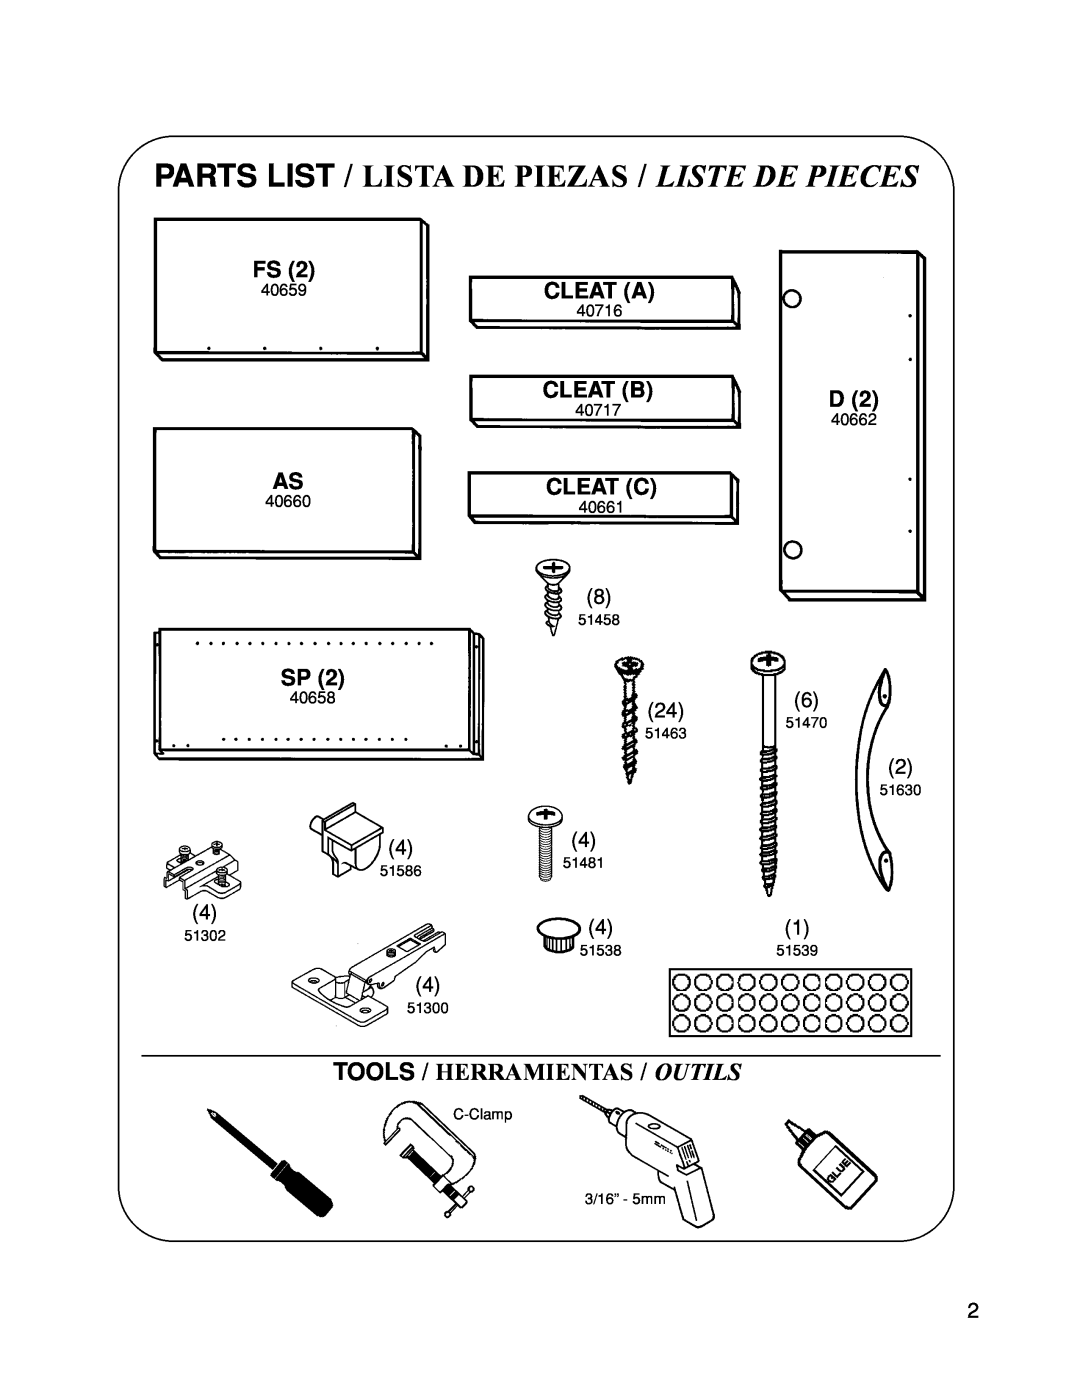 Closet Maid 12317 Tools / Herramientas / Outils, Cleat A, Cleat B, Cleat C, Parts List / Lista De Piezas / Liste De Pieces 